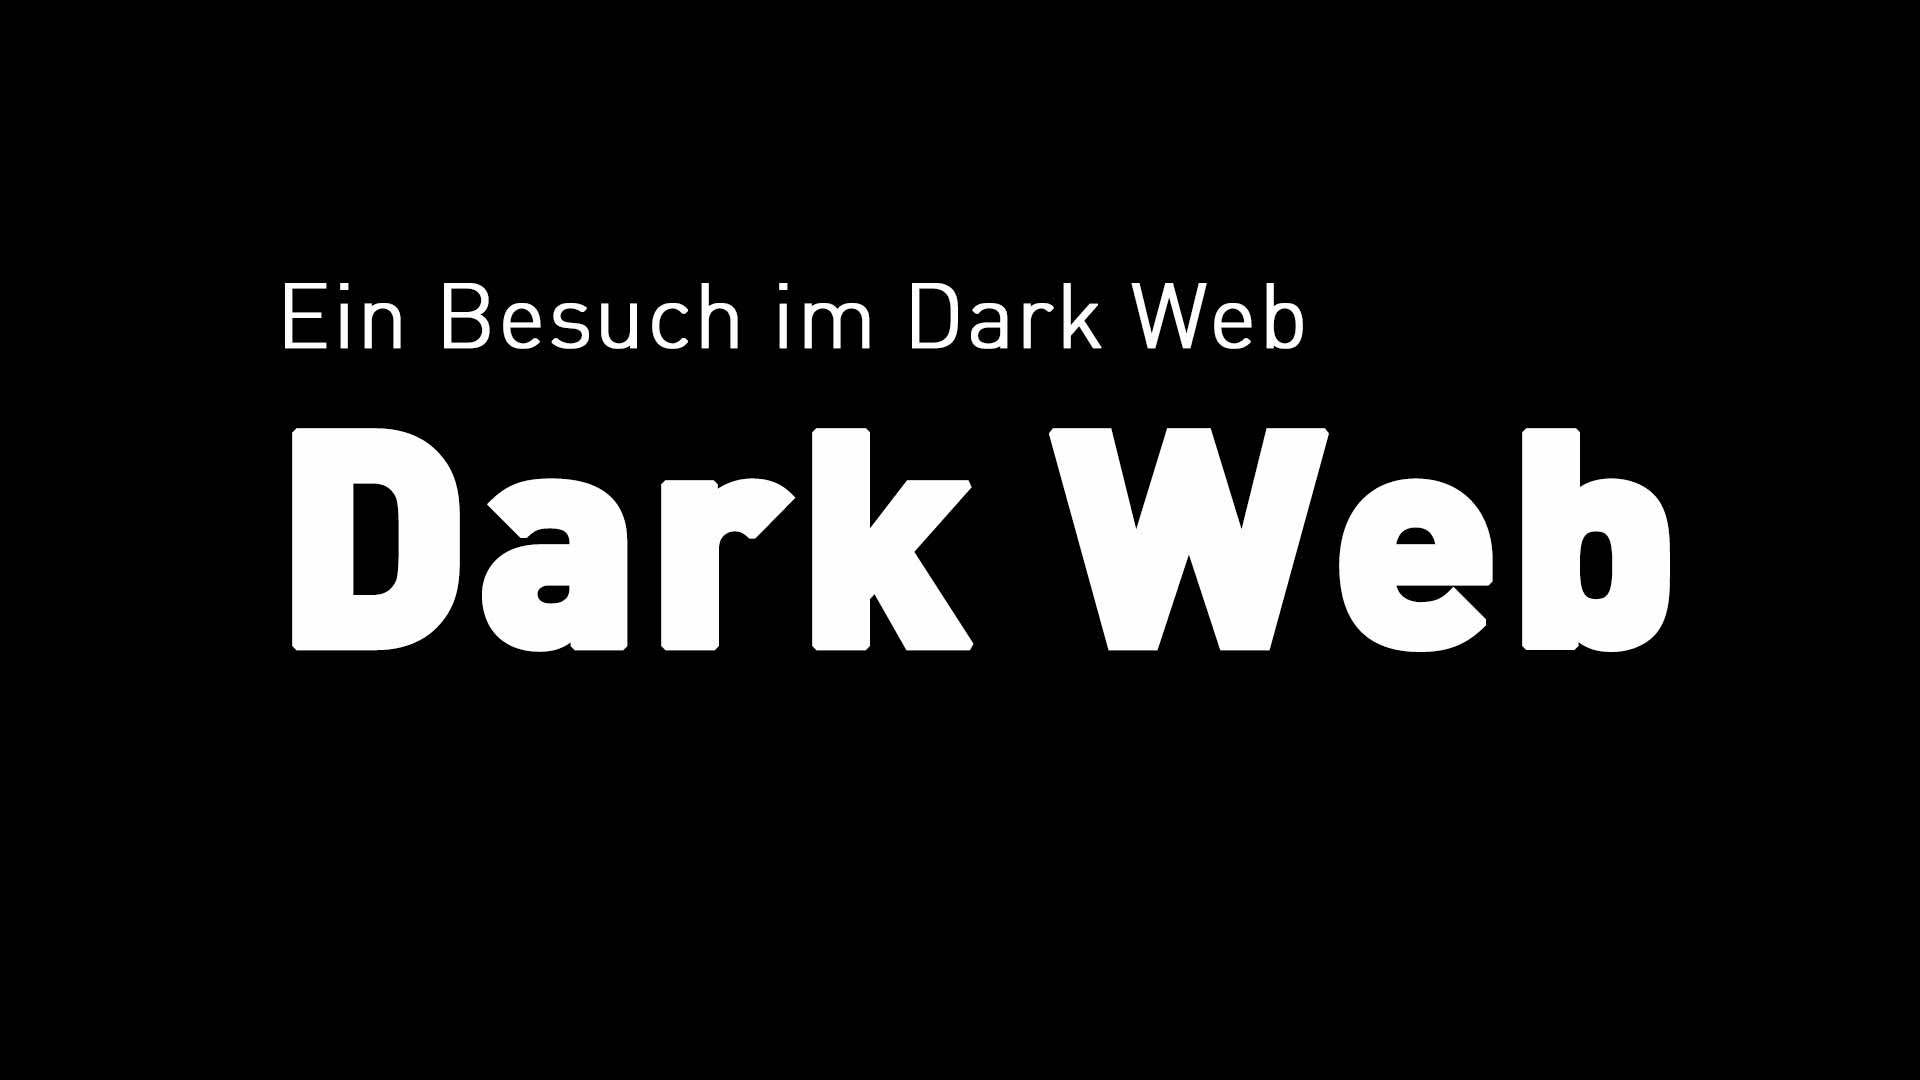 Mein erster Besuch im Dark Web / Tor / Darknet – ein kurzer Einblick in diese verruchte Welt